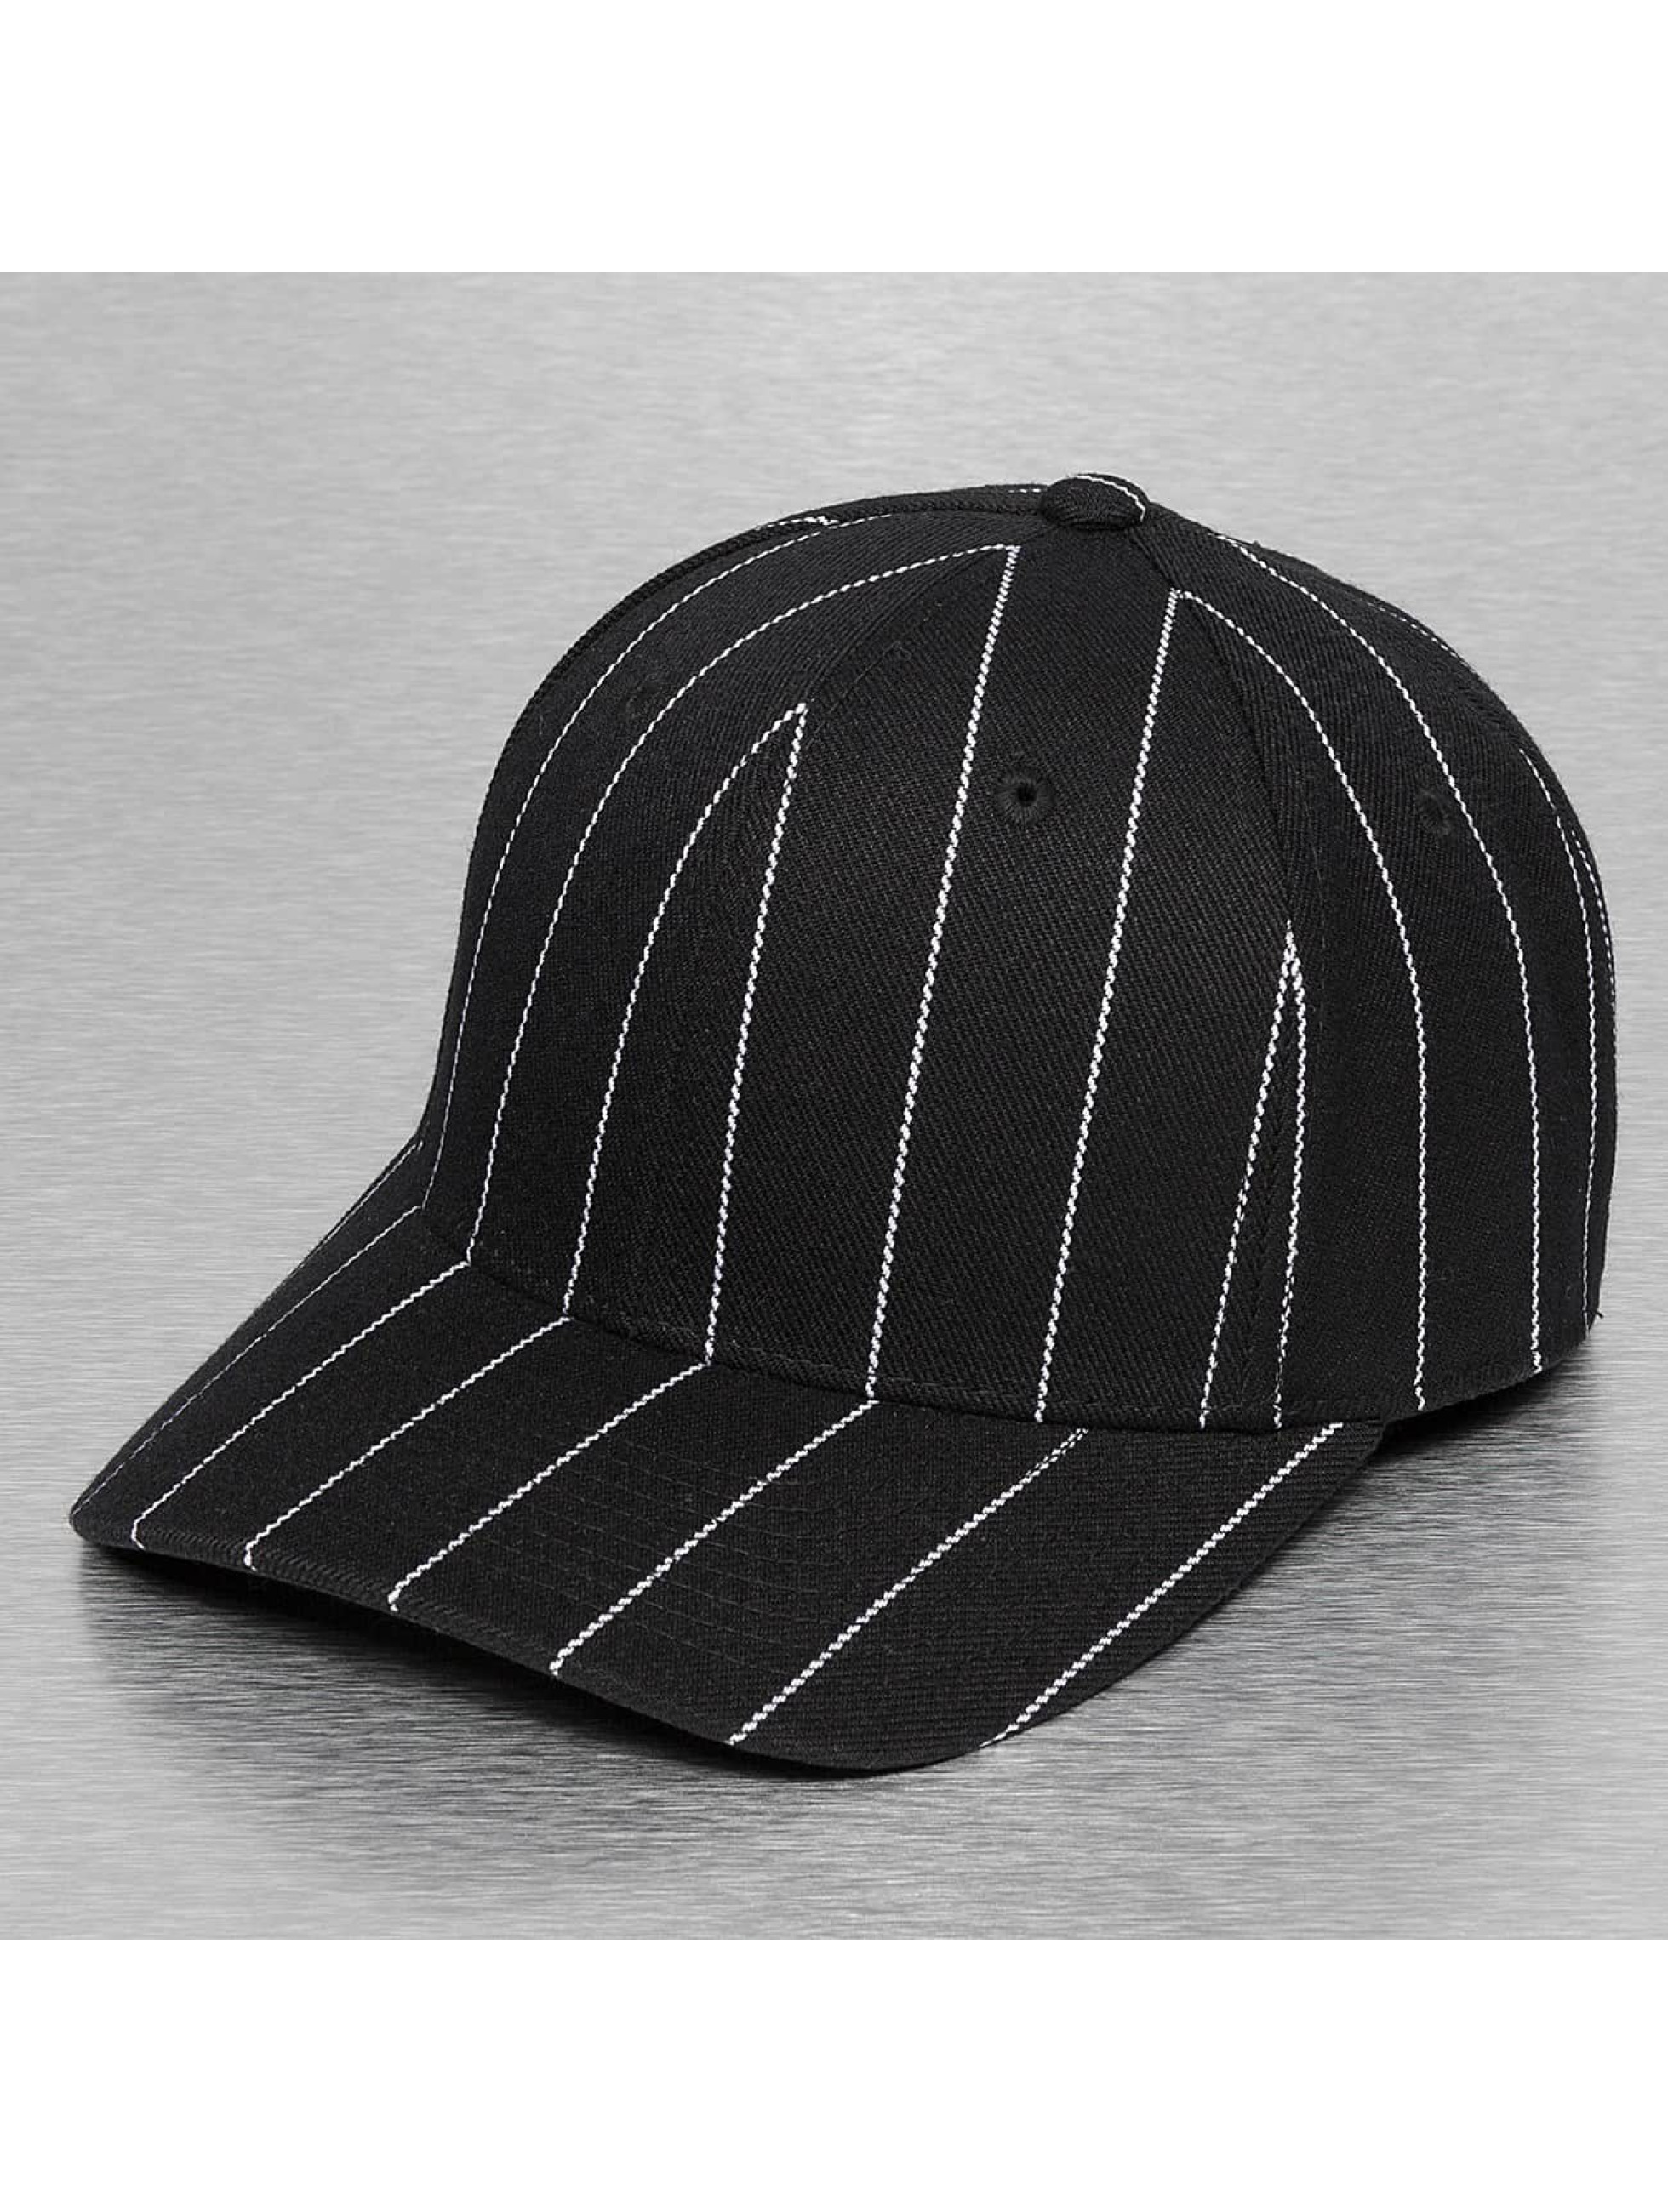 Cap Crony Cap / Fitted Cap Pin Striped in zwart